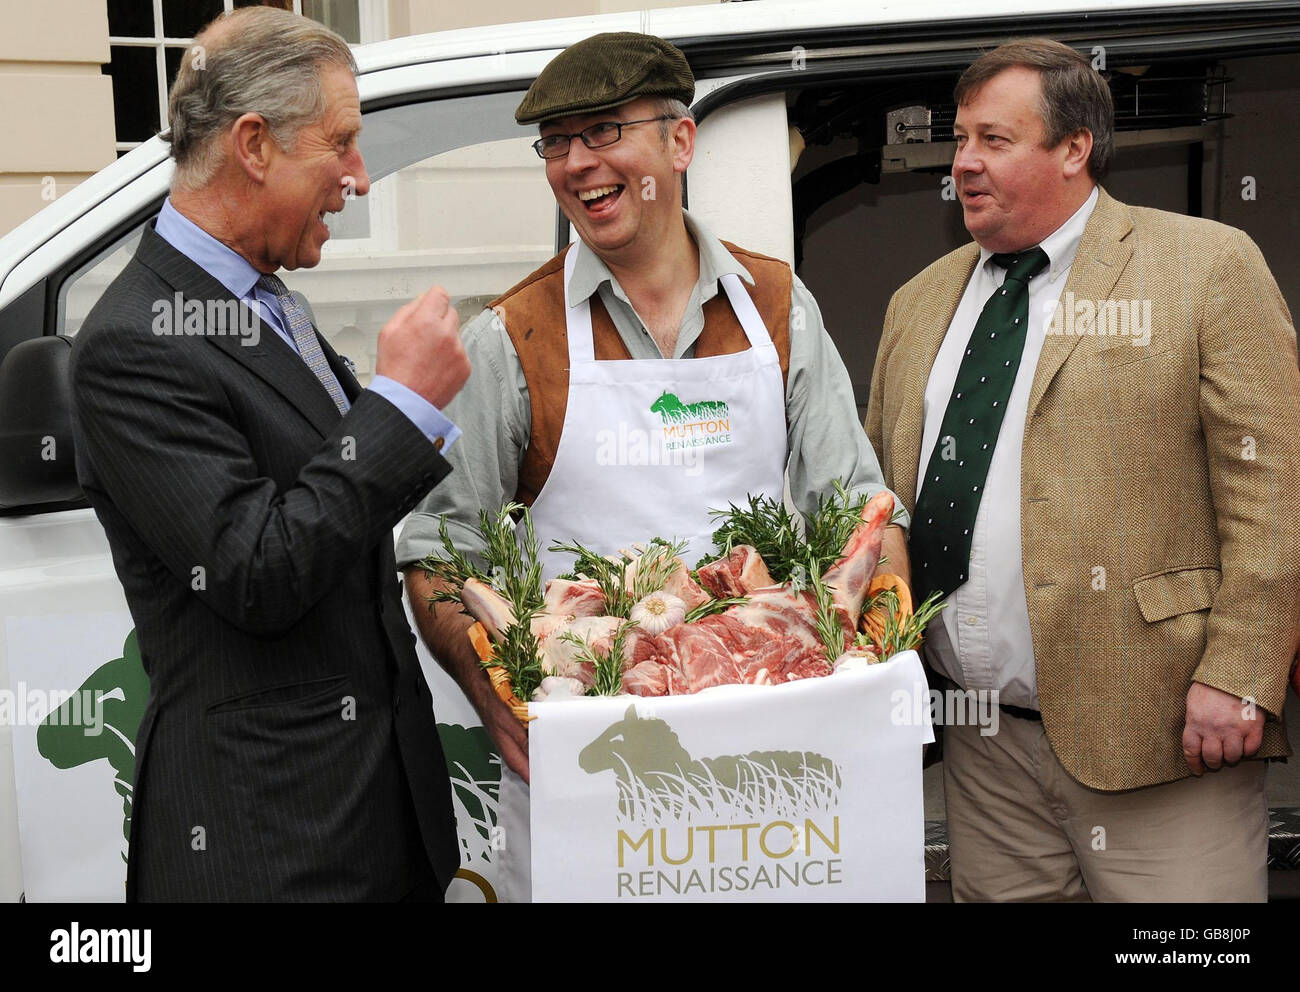 Le Prince de Galles, fondateur de la campagne de la Renaissance de mouton et patron de l'Académie des arts culinaires, reçoit du boucher Andrew Sharp (casquette plate) et de l'agriculteur Tim Wilson, le premier mouton de la Renaissance de la saison à Clarence House à Londres. Banque D'Images